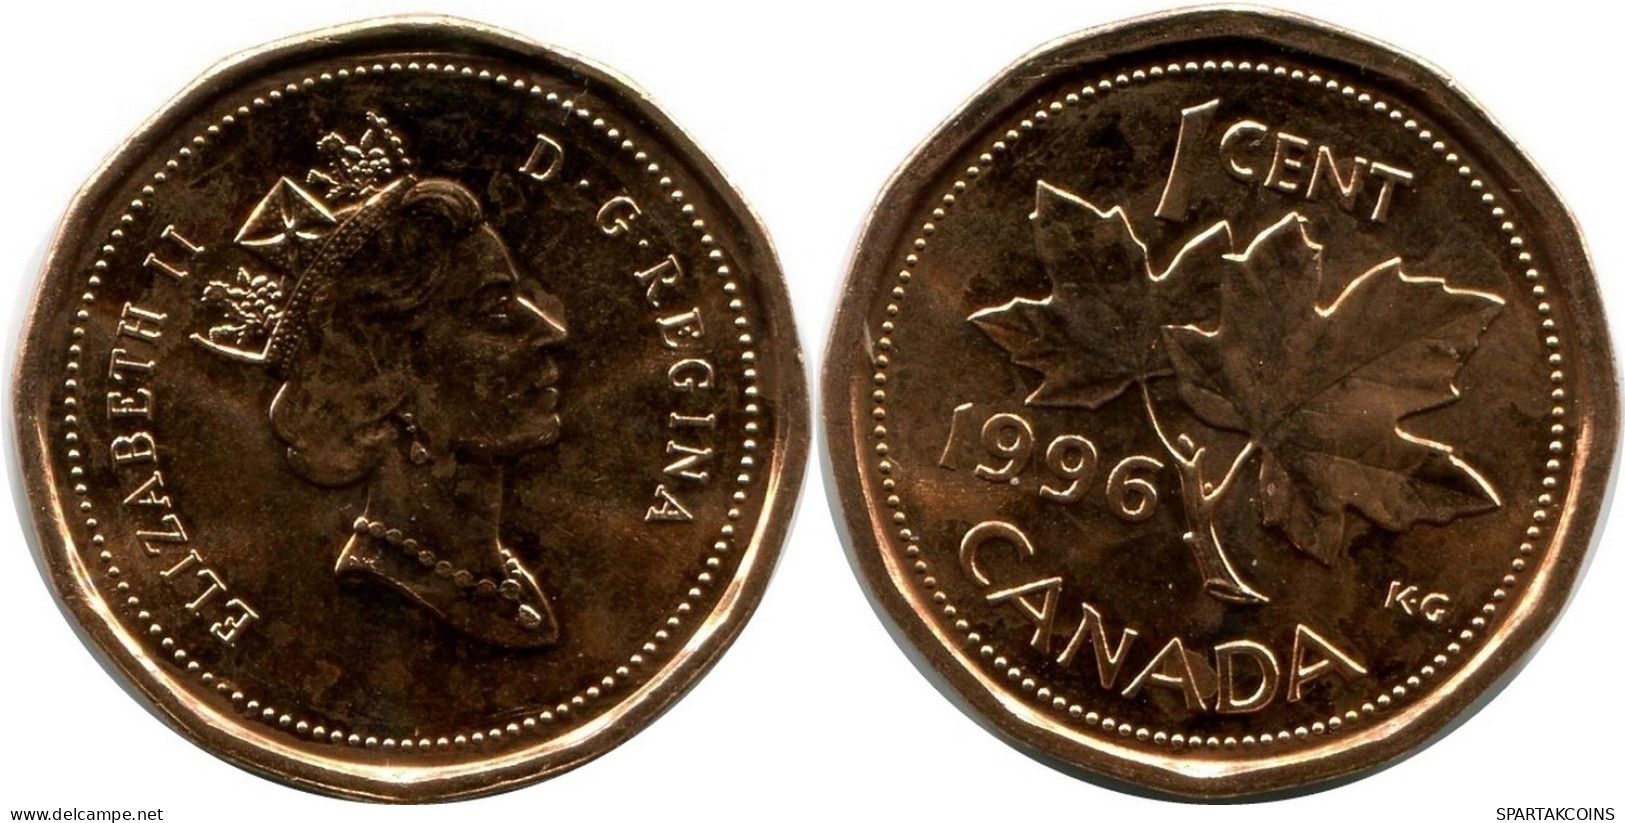 1 CENT 1996 CANADA UNC Moneda #M10351.E.A - Canada